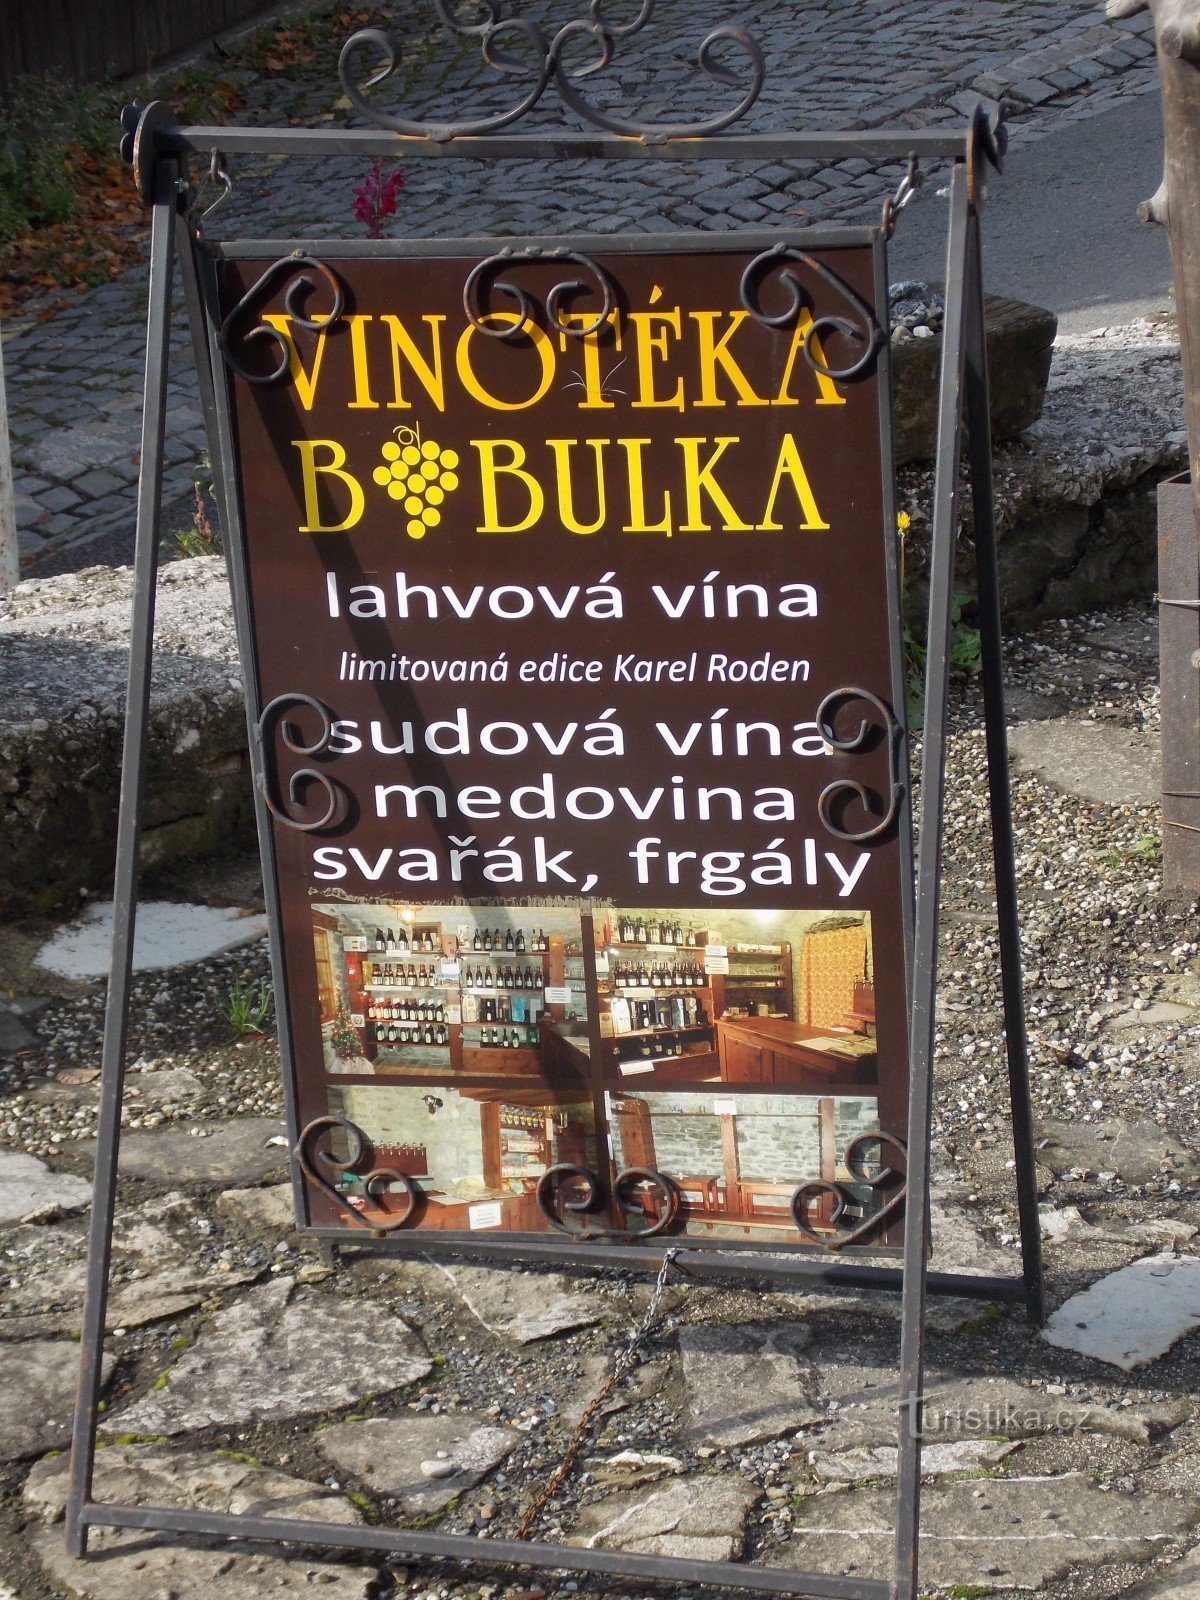 要想喝上好酒，请前往 Štramberk 的 Bobulka 葡萄酒商店